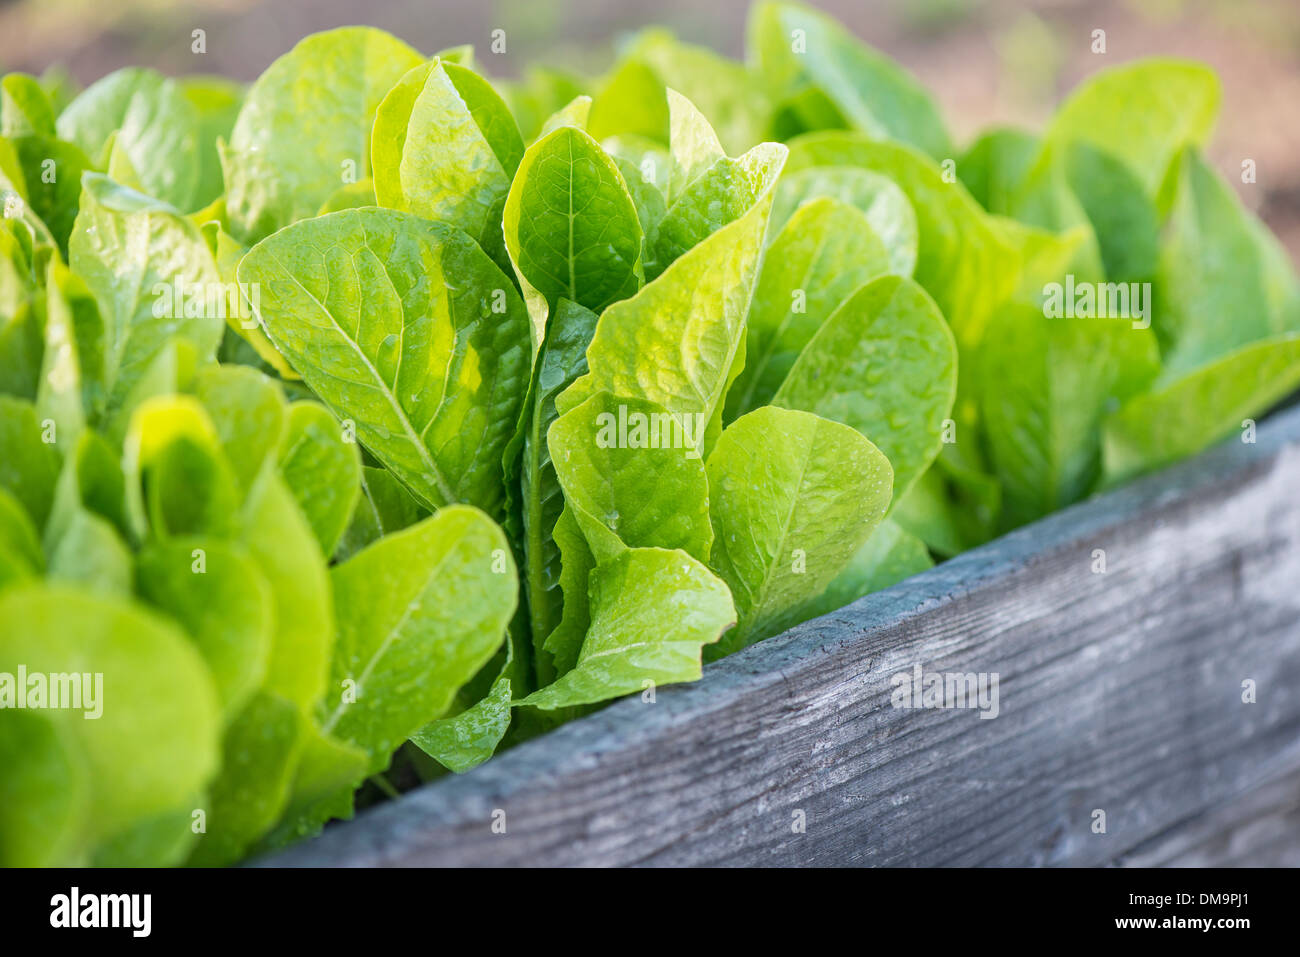 Fresche e mature romain lattuga crescente in un orto Foto Stock